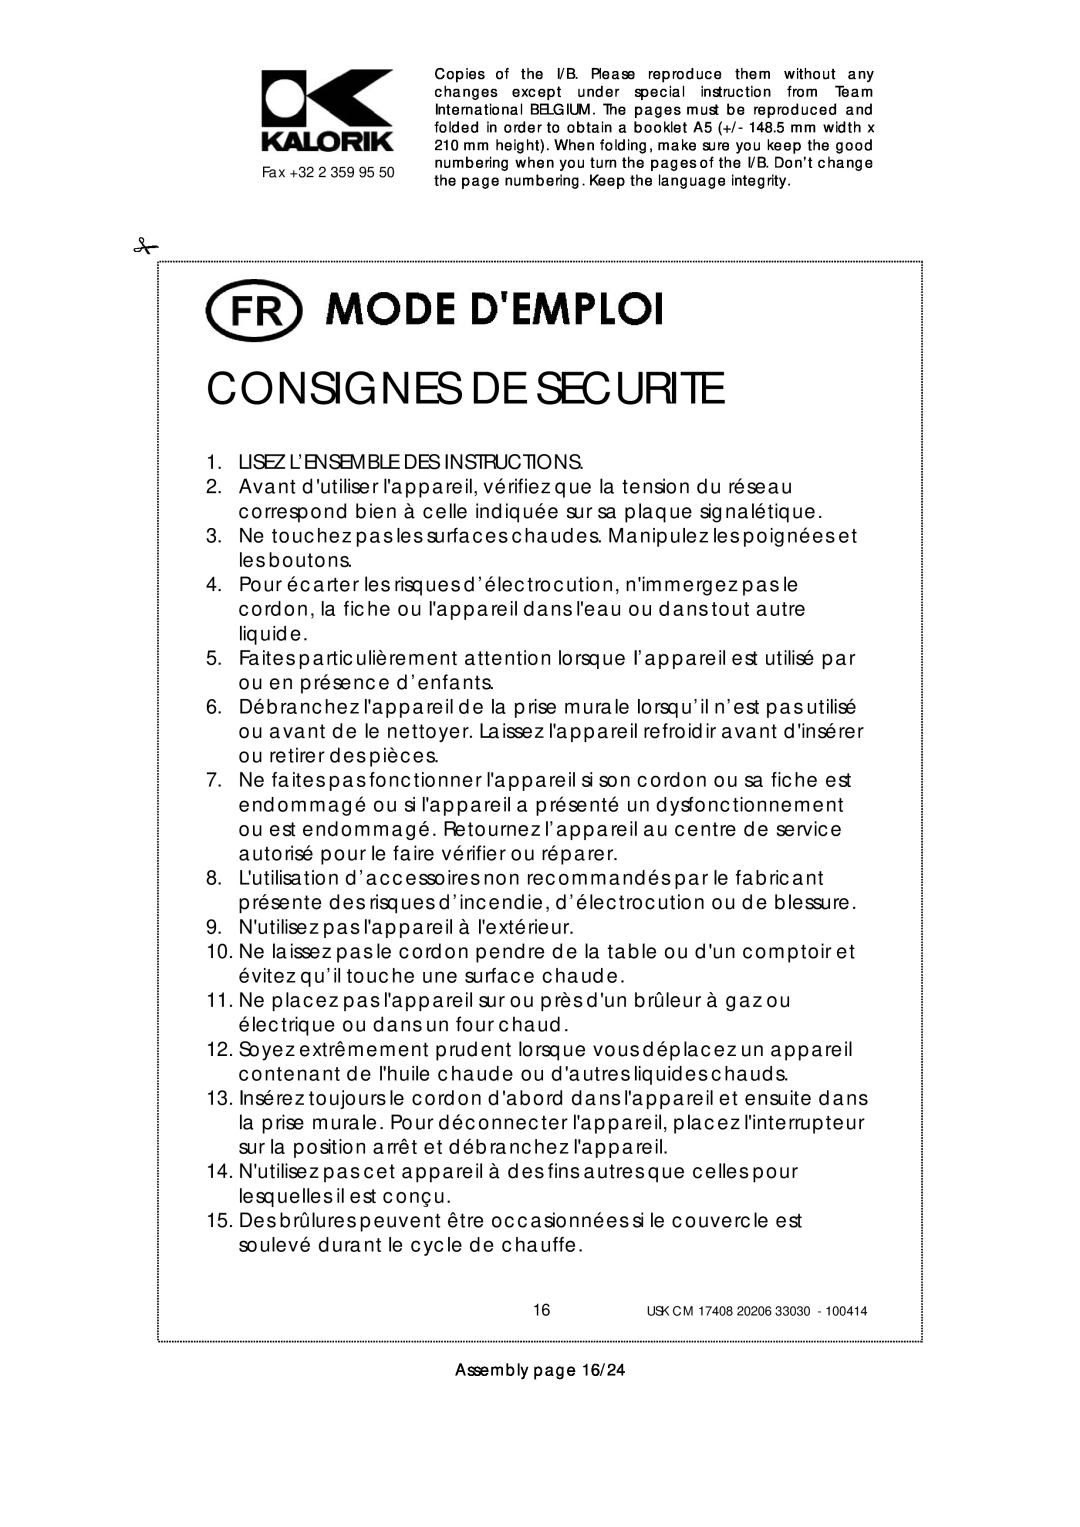 Kalorik USK CM 17408, USK CM 33030, USK CM 20206 manual Consignes De Securite, Lisez L’Ensemble Des Instructions 